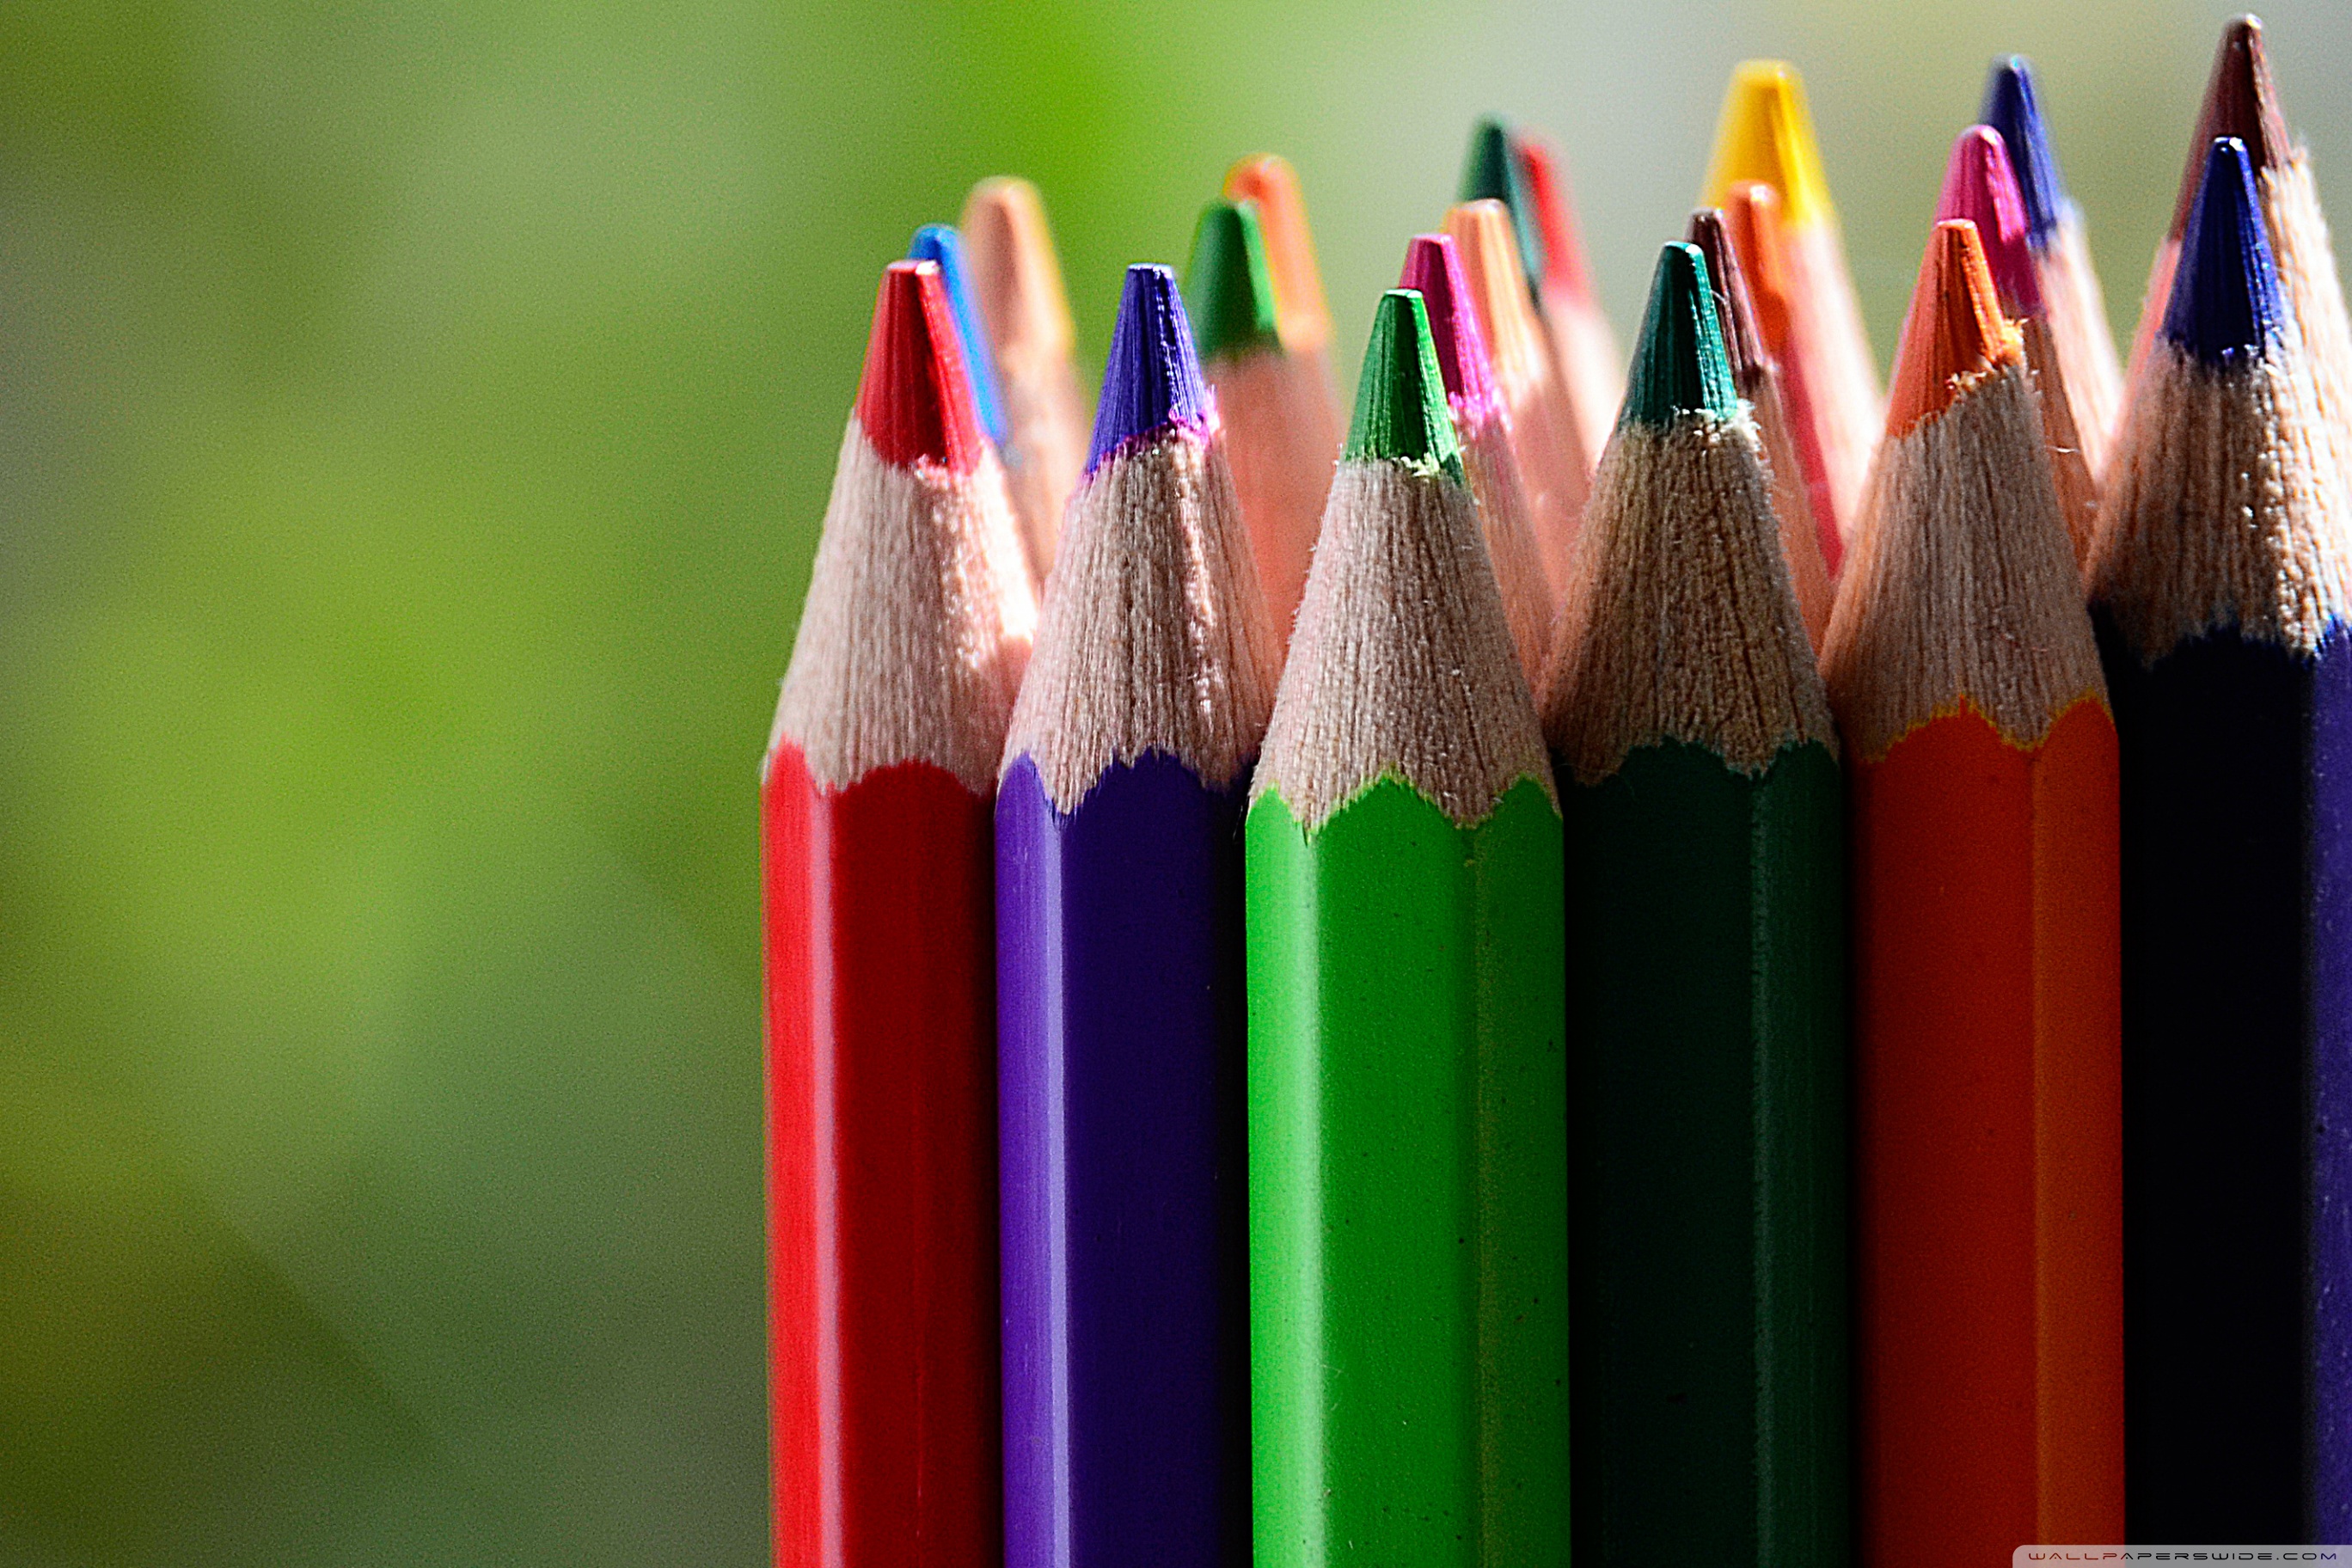 色鉛筆壁紙,鉛筆,事務用品,筆記具,カラフル,文房具